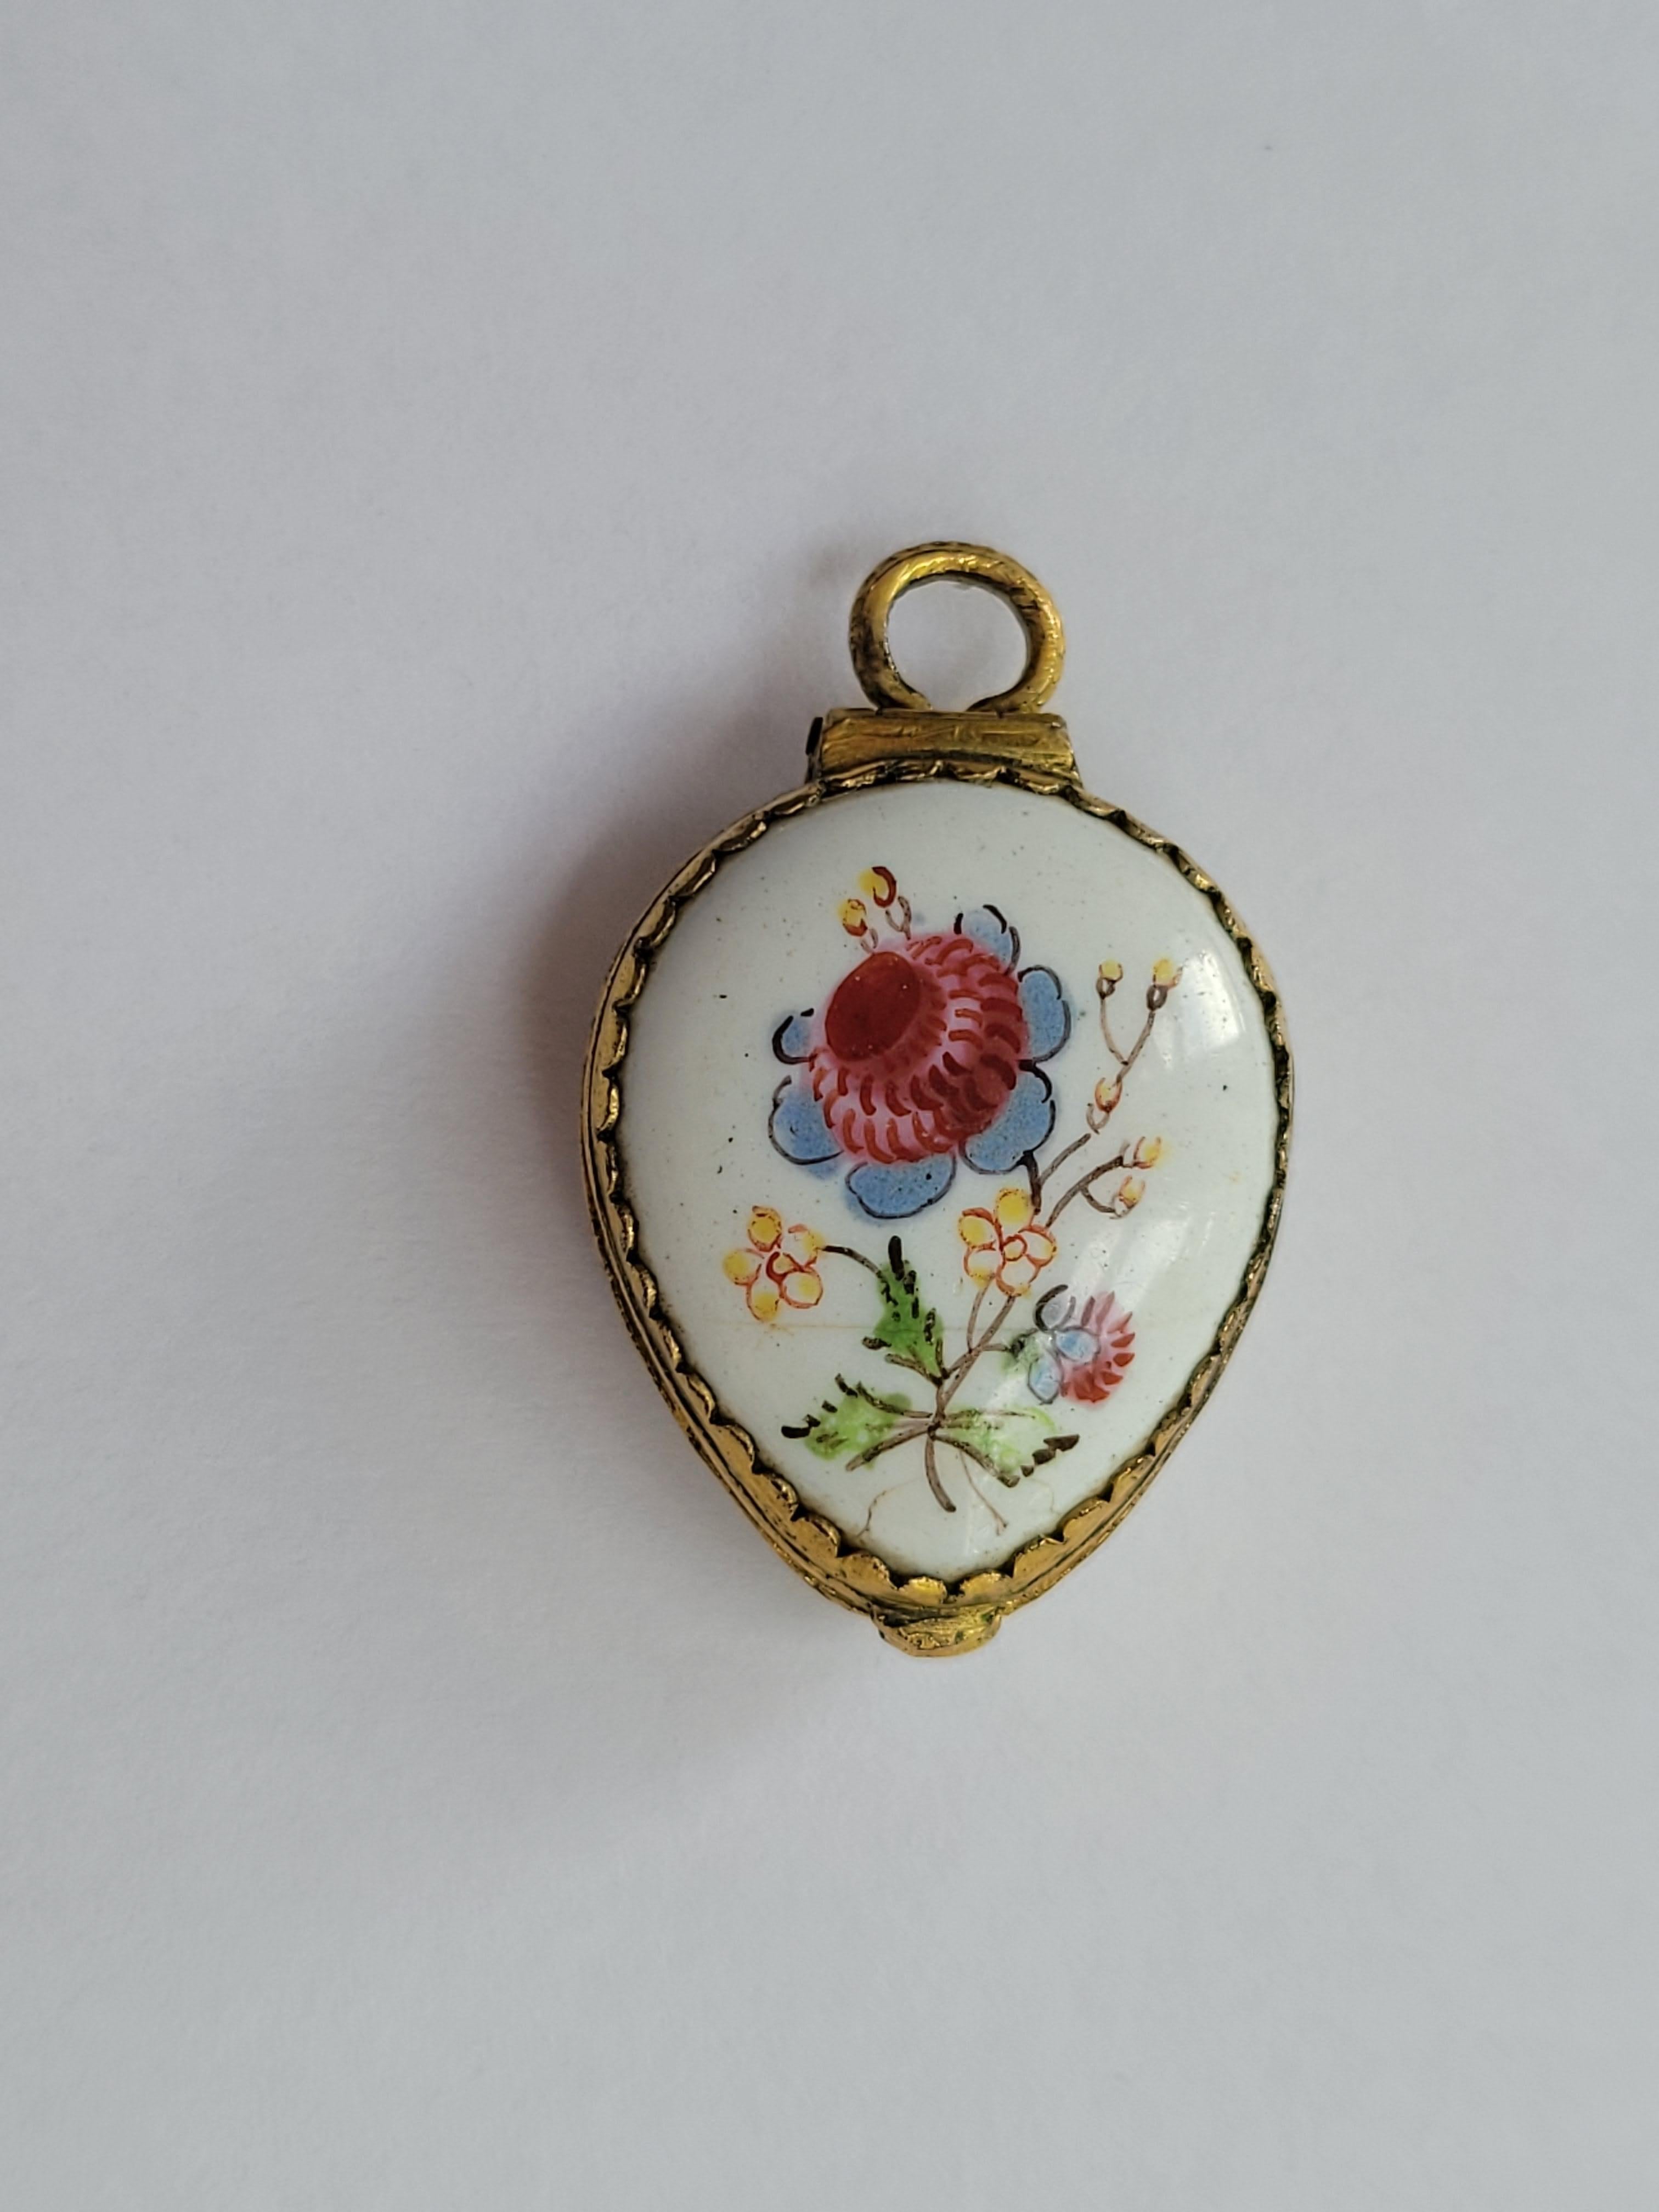 Dieses bezaubernde georgianische Medaillon aus der Zeit um 1800 aus Bilston Battersea mit handgemalter Emaille ist ein seltenes und fesselndes Sammlerstück mit tiefen englischen Wurzeln. In Herzform gefertigt und mit traditionellen floralen Motiven